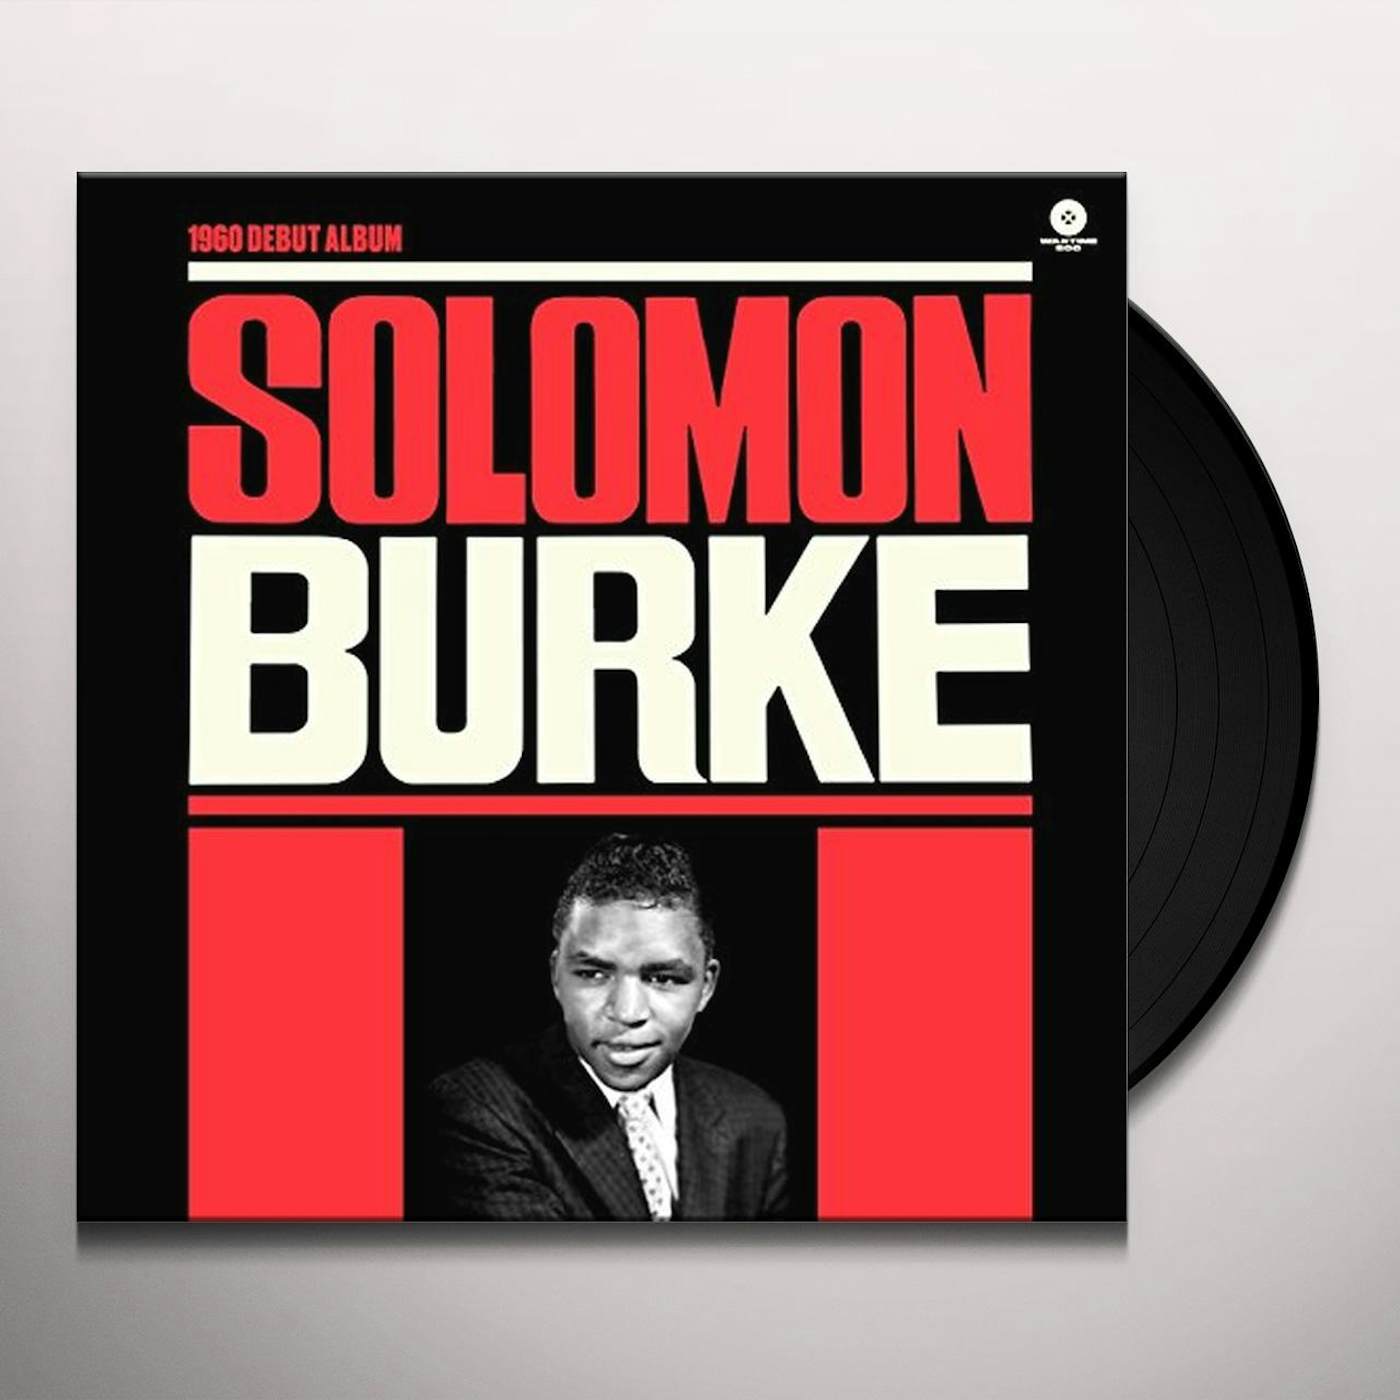 SOLOMON BURKE (1960 DEBUT ALBUM) (BONUS TRACKS) Vinyl Record